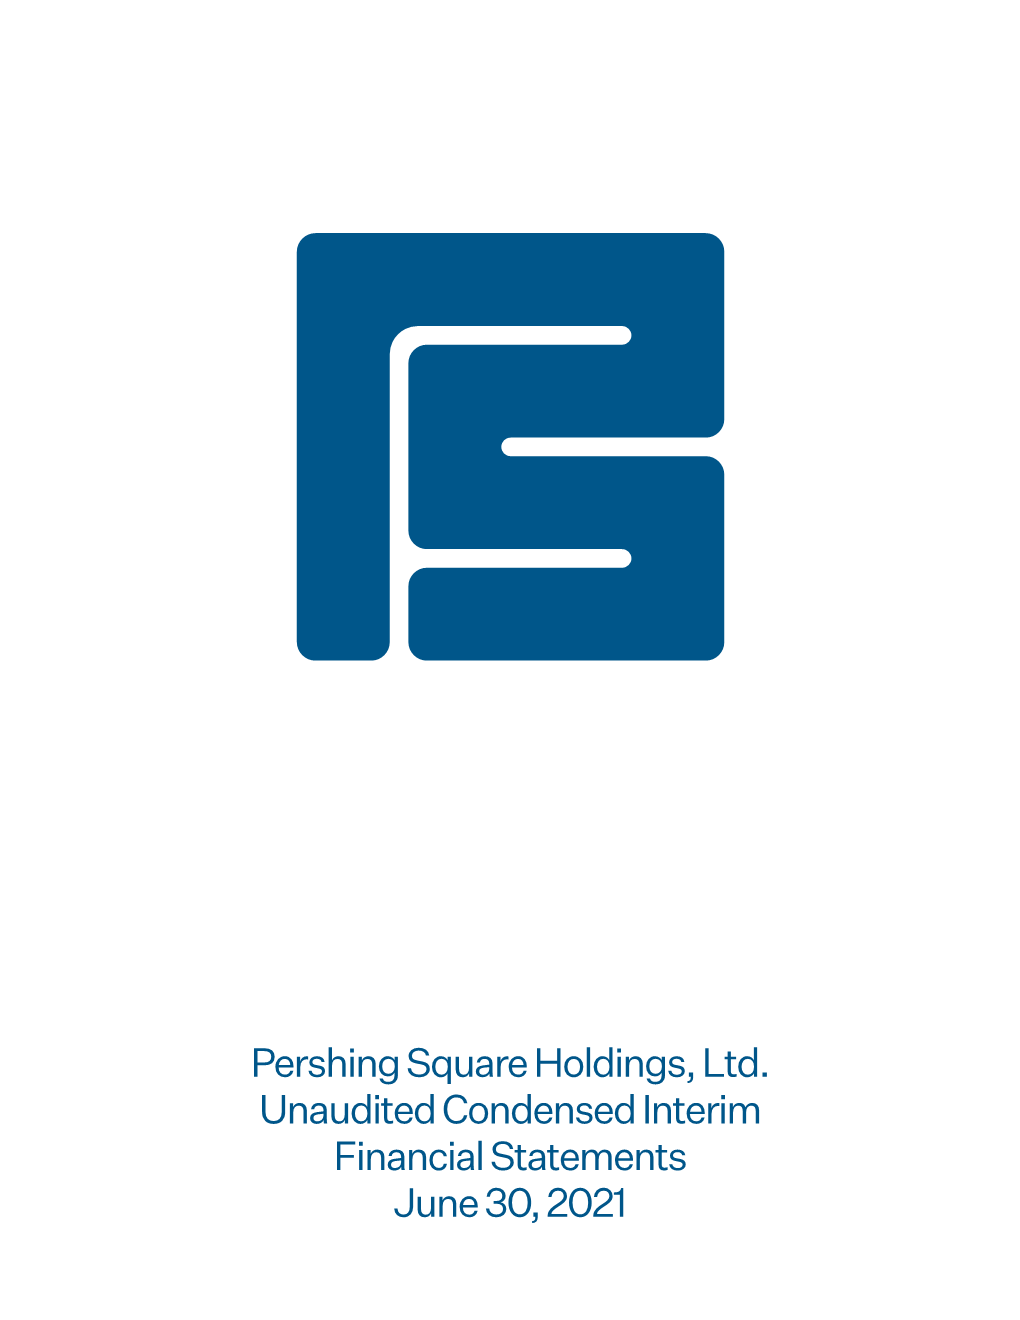 Pershing Square Holdings, Ltd. 2021 Unaudited Condensed Interim